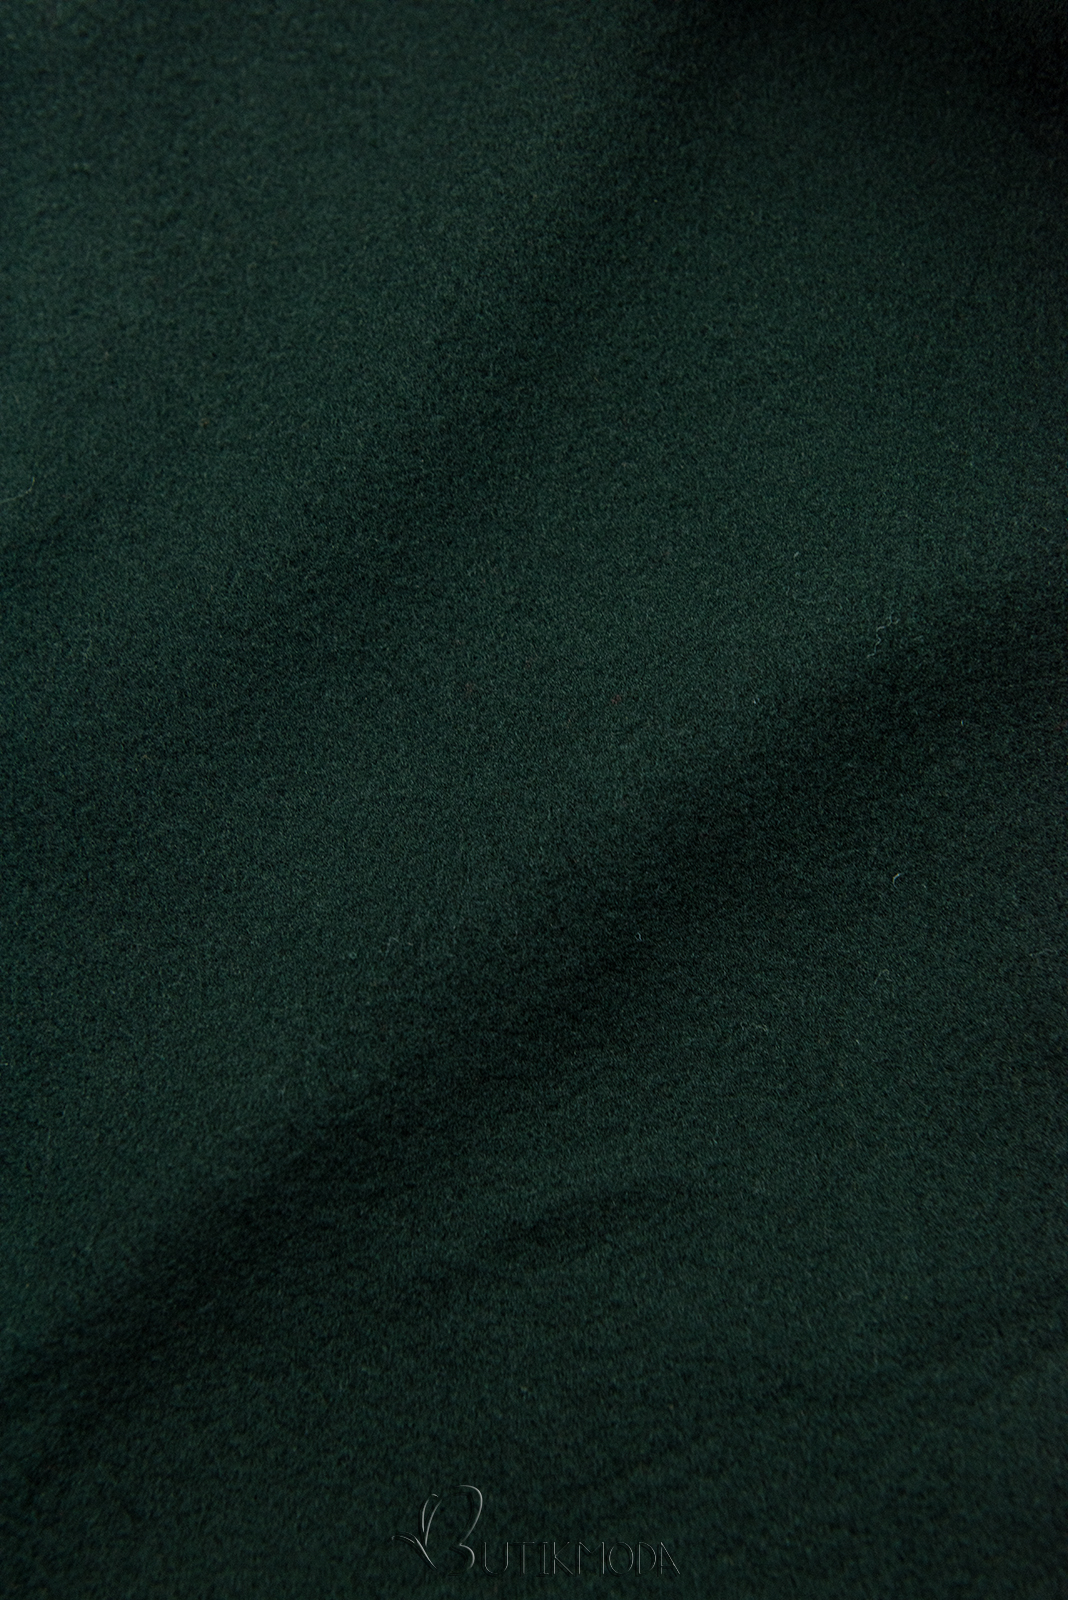 Hanorac lung verde smarald cu glugă